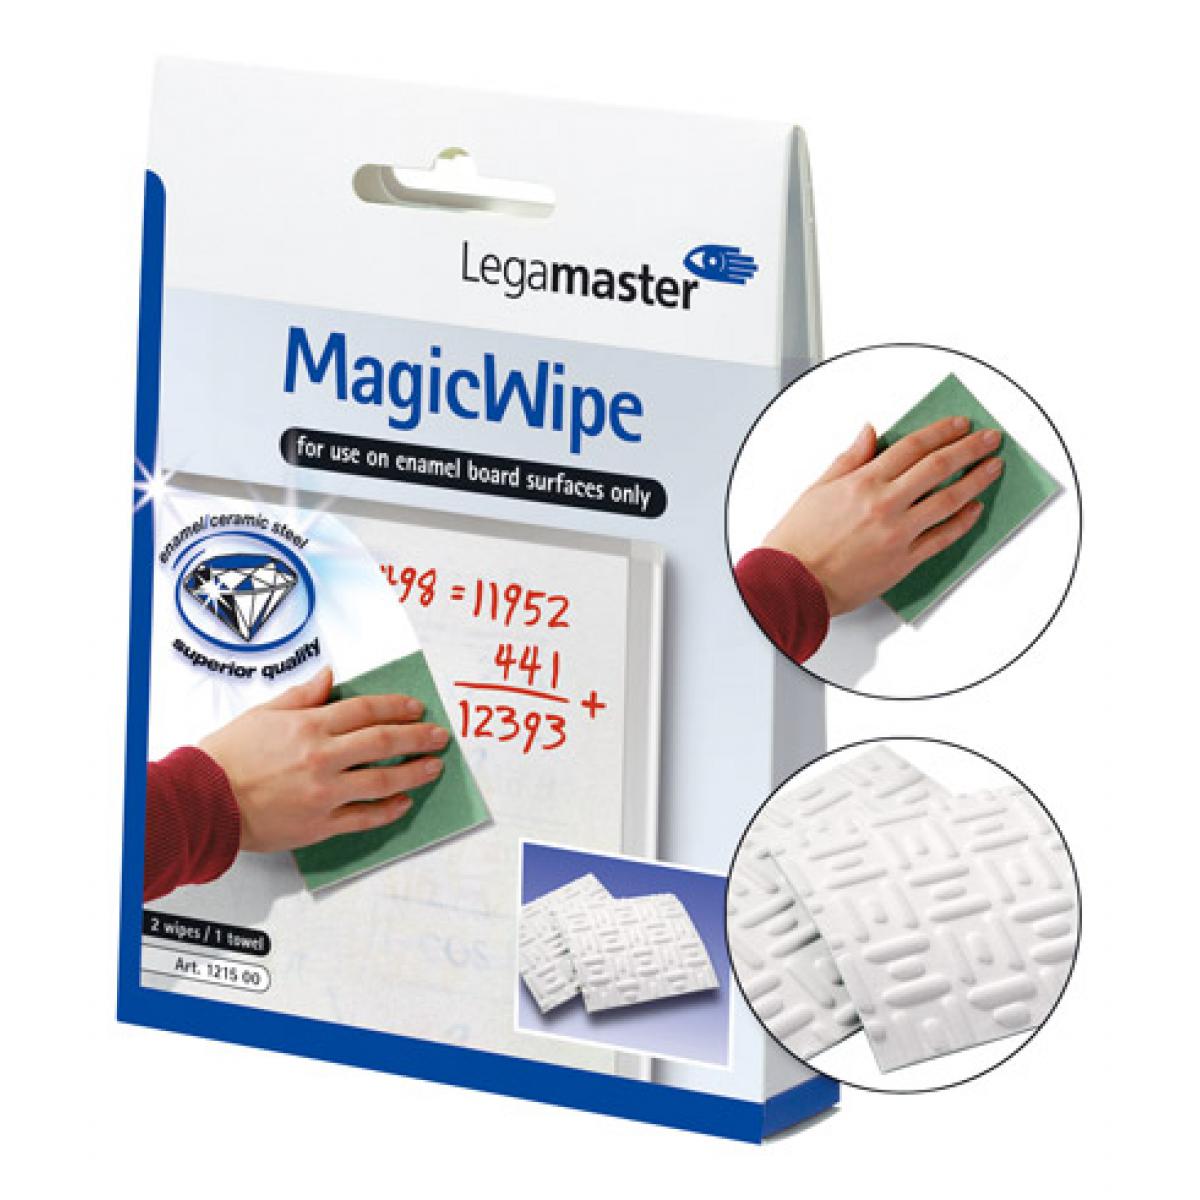 Legamaster - Eponge magique Legamaster Magic Wipe pour tableau blanc - Accessoires Bureau